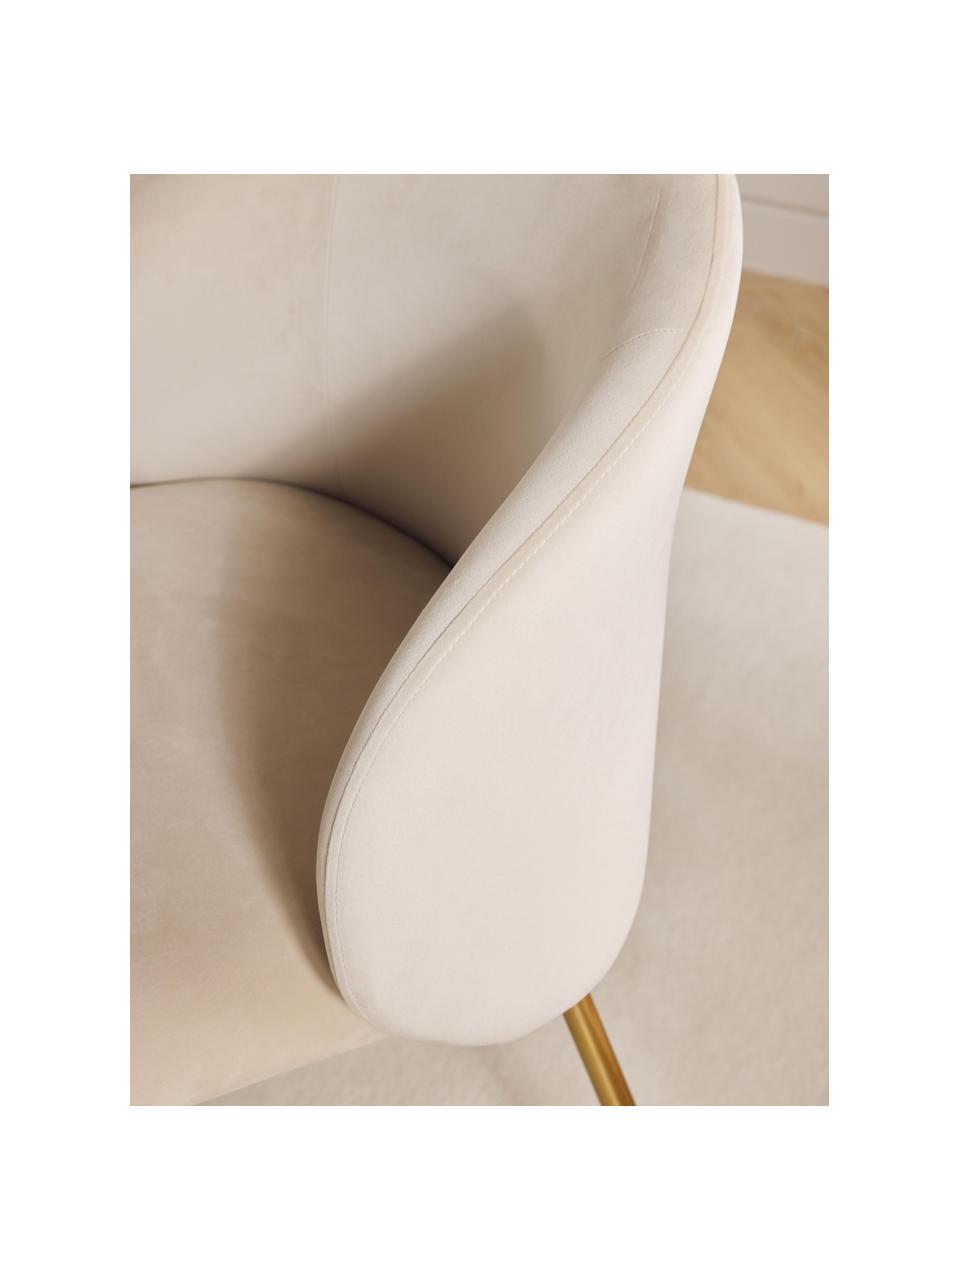 Krzesło tapicerowane z aksamitu Luisa, 2 szt., Tapicerka: aksamit (100% poliester) , Nogi: metal malowany proszkowo, Kremowobiały aksamit, odcienie złotego, S 59 x G 58 cm